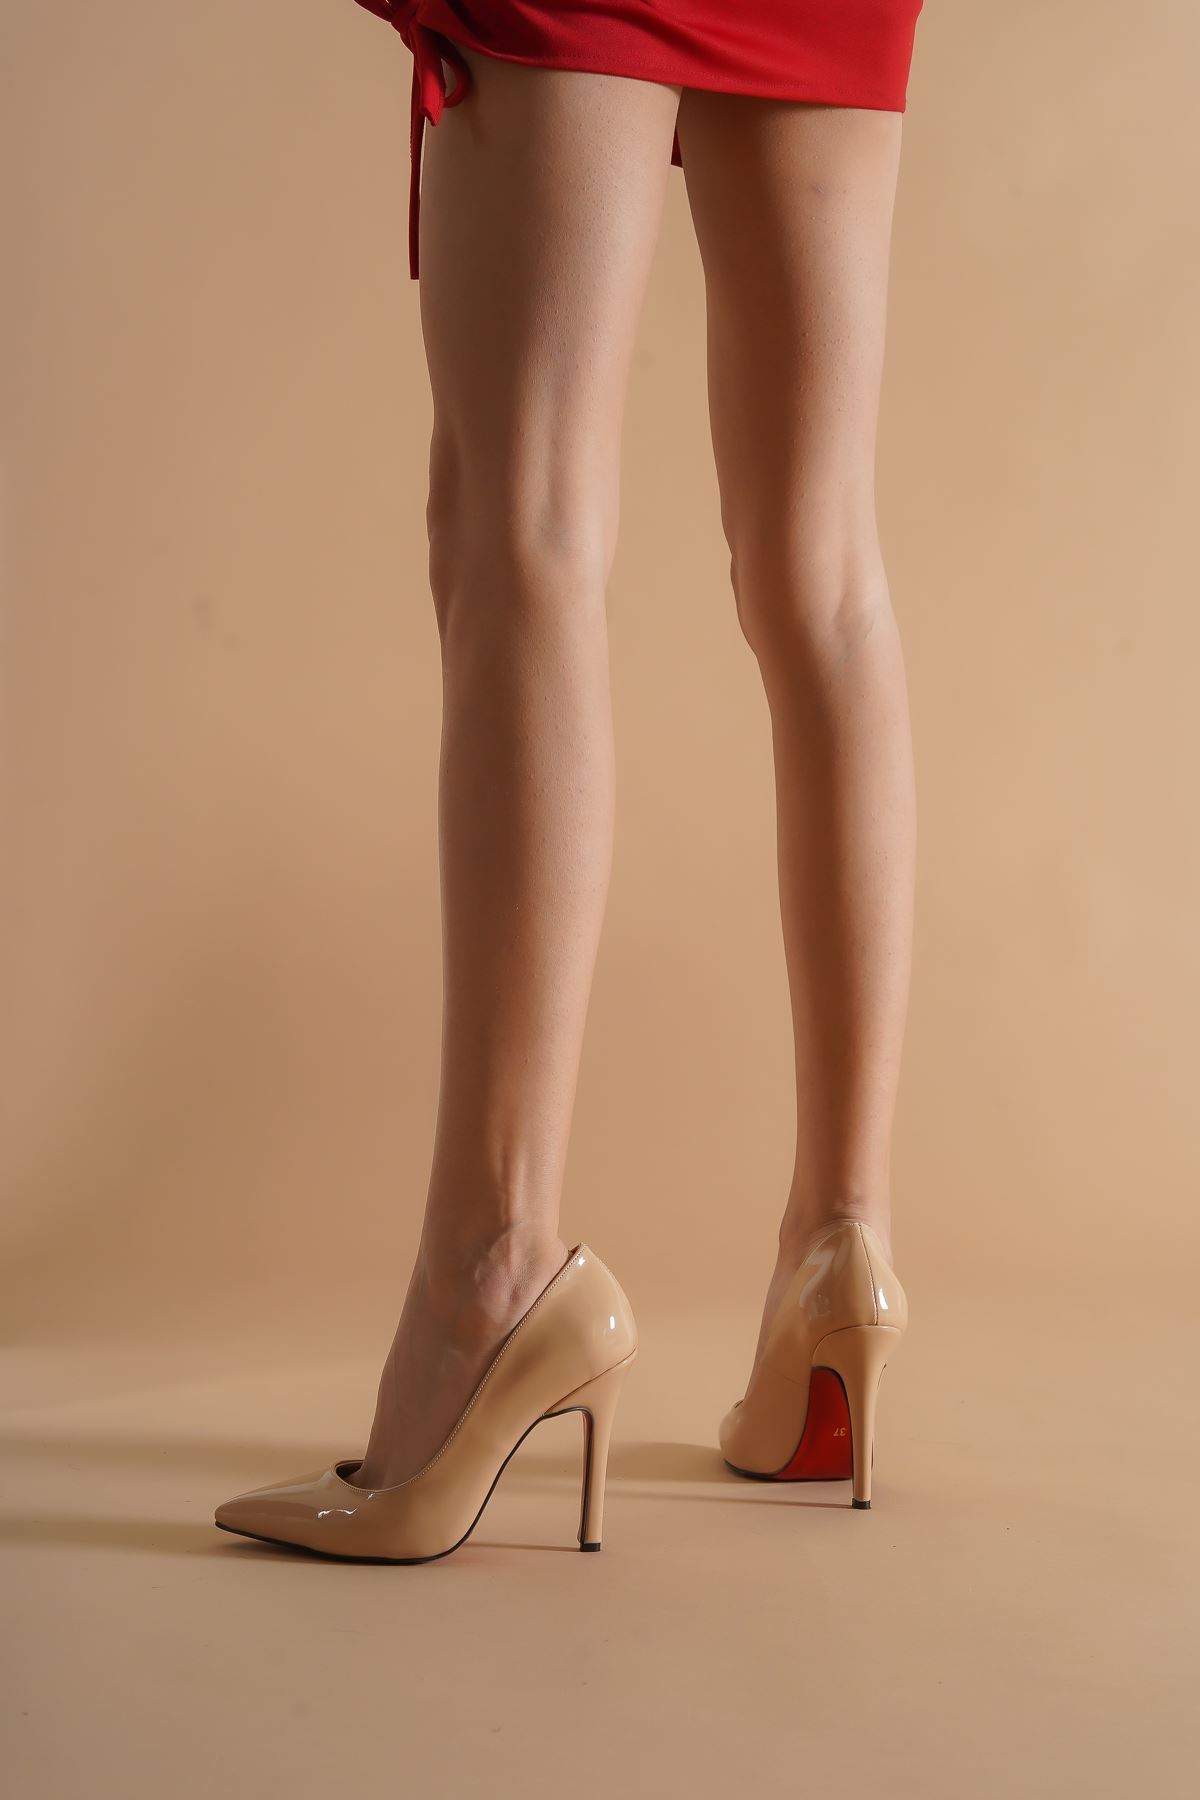 Tokyo Nude Rugan Kadın Topuklu Ayakkabı Stiletto